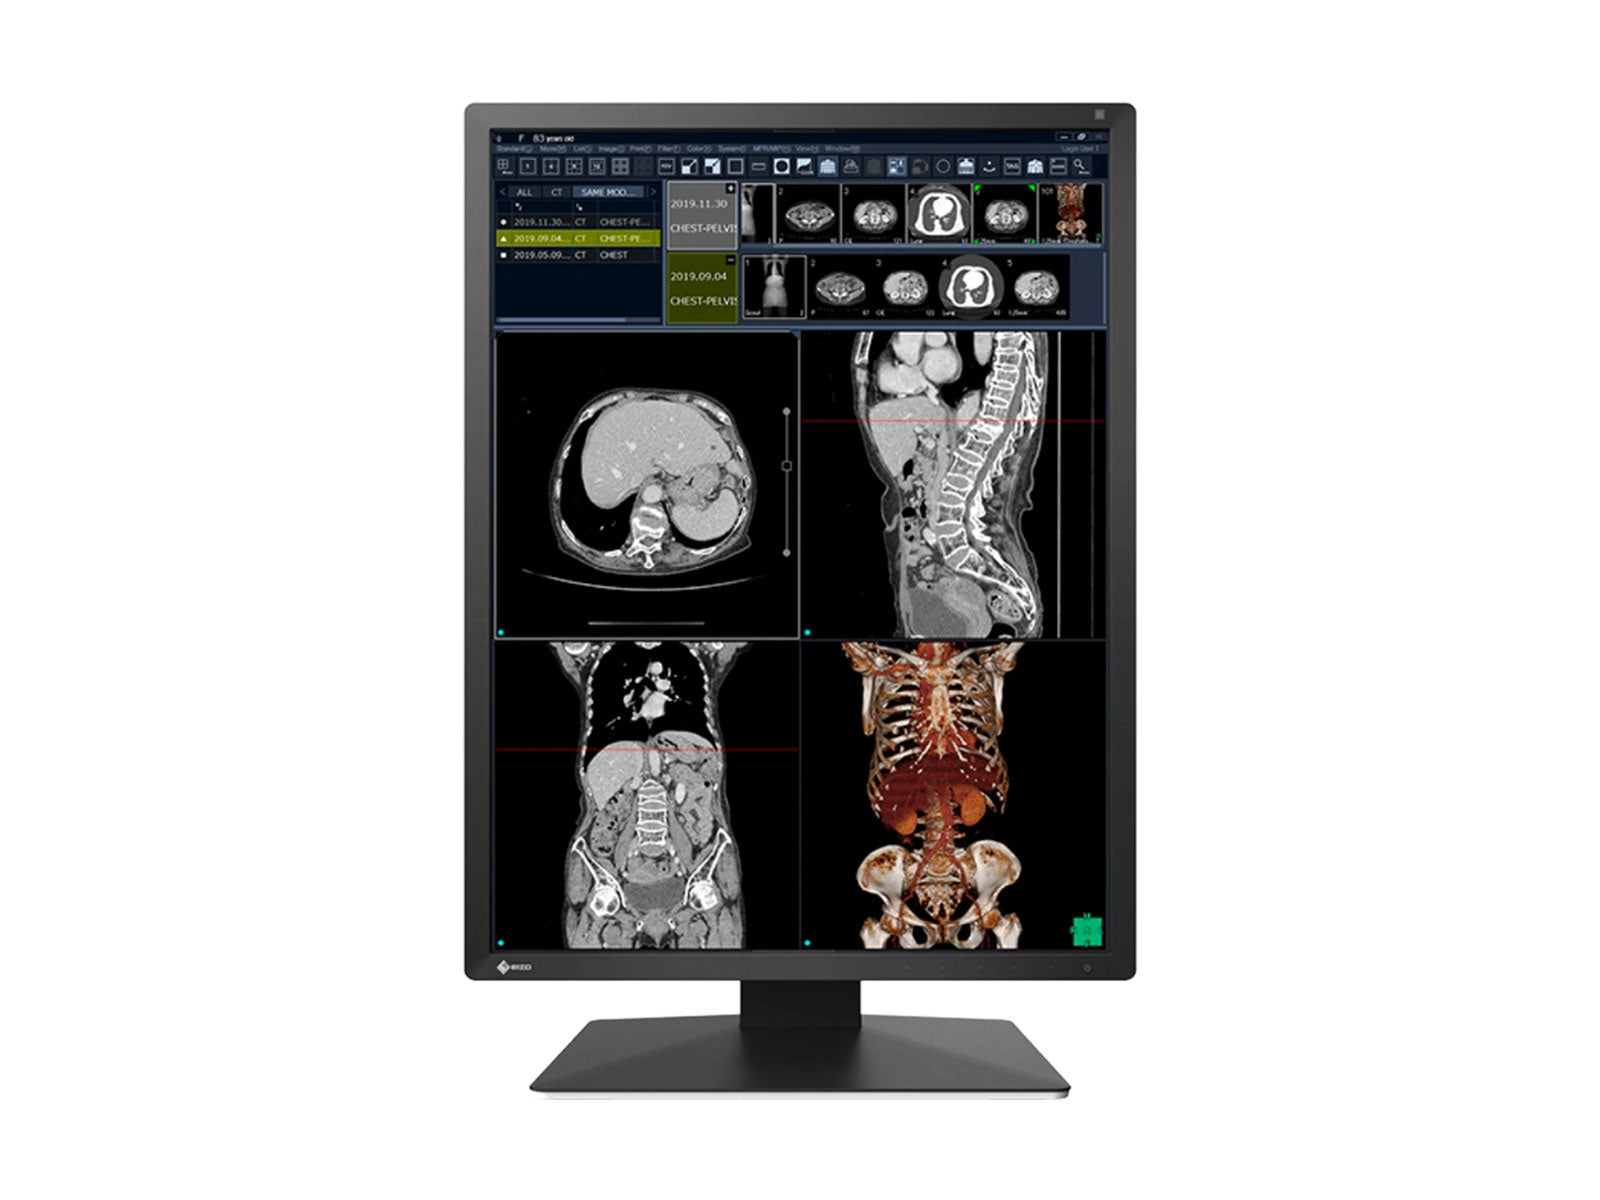 Eizo RadiForce RX270 2MP 21" Moniteur d'affichage de radiologie diagnostique médical LED couleur (RX270-BK)